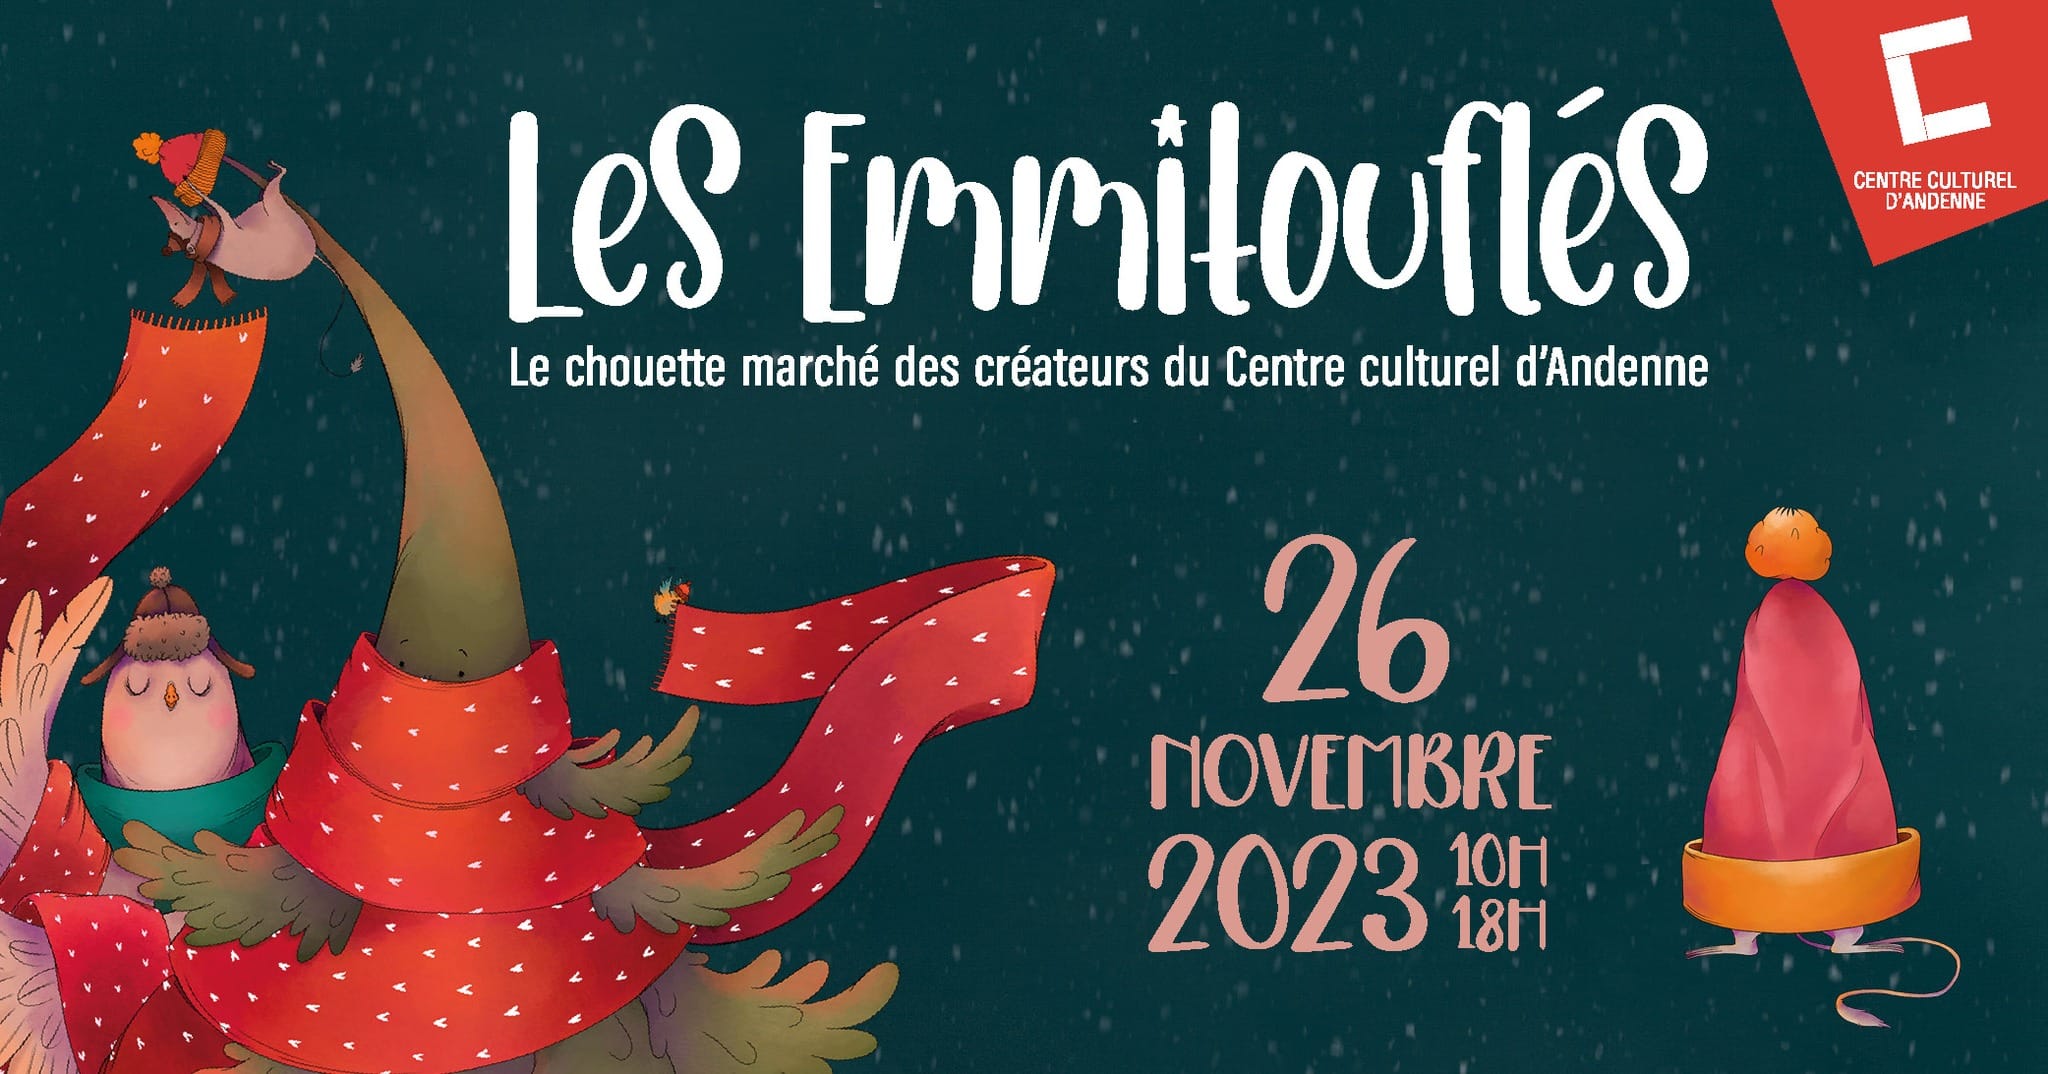 Affiche de l'événement : Les emmitouflés, le chouette marché des créateurs du centre culturel d'Andenne